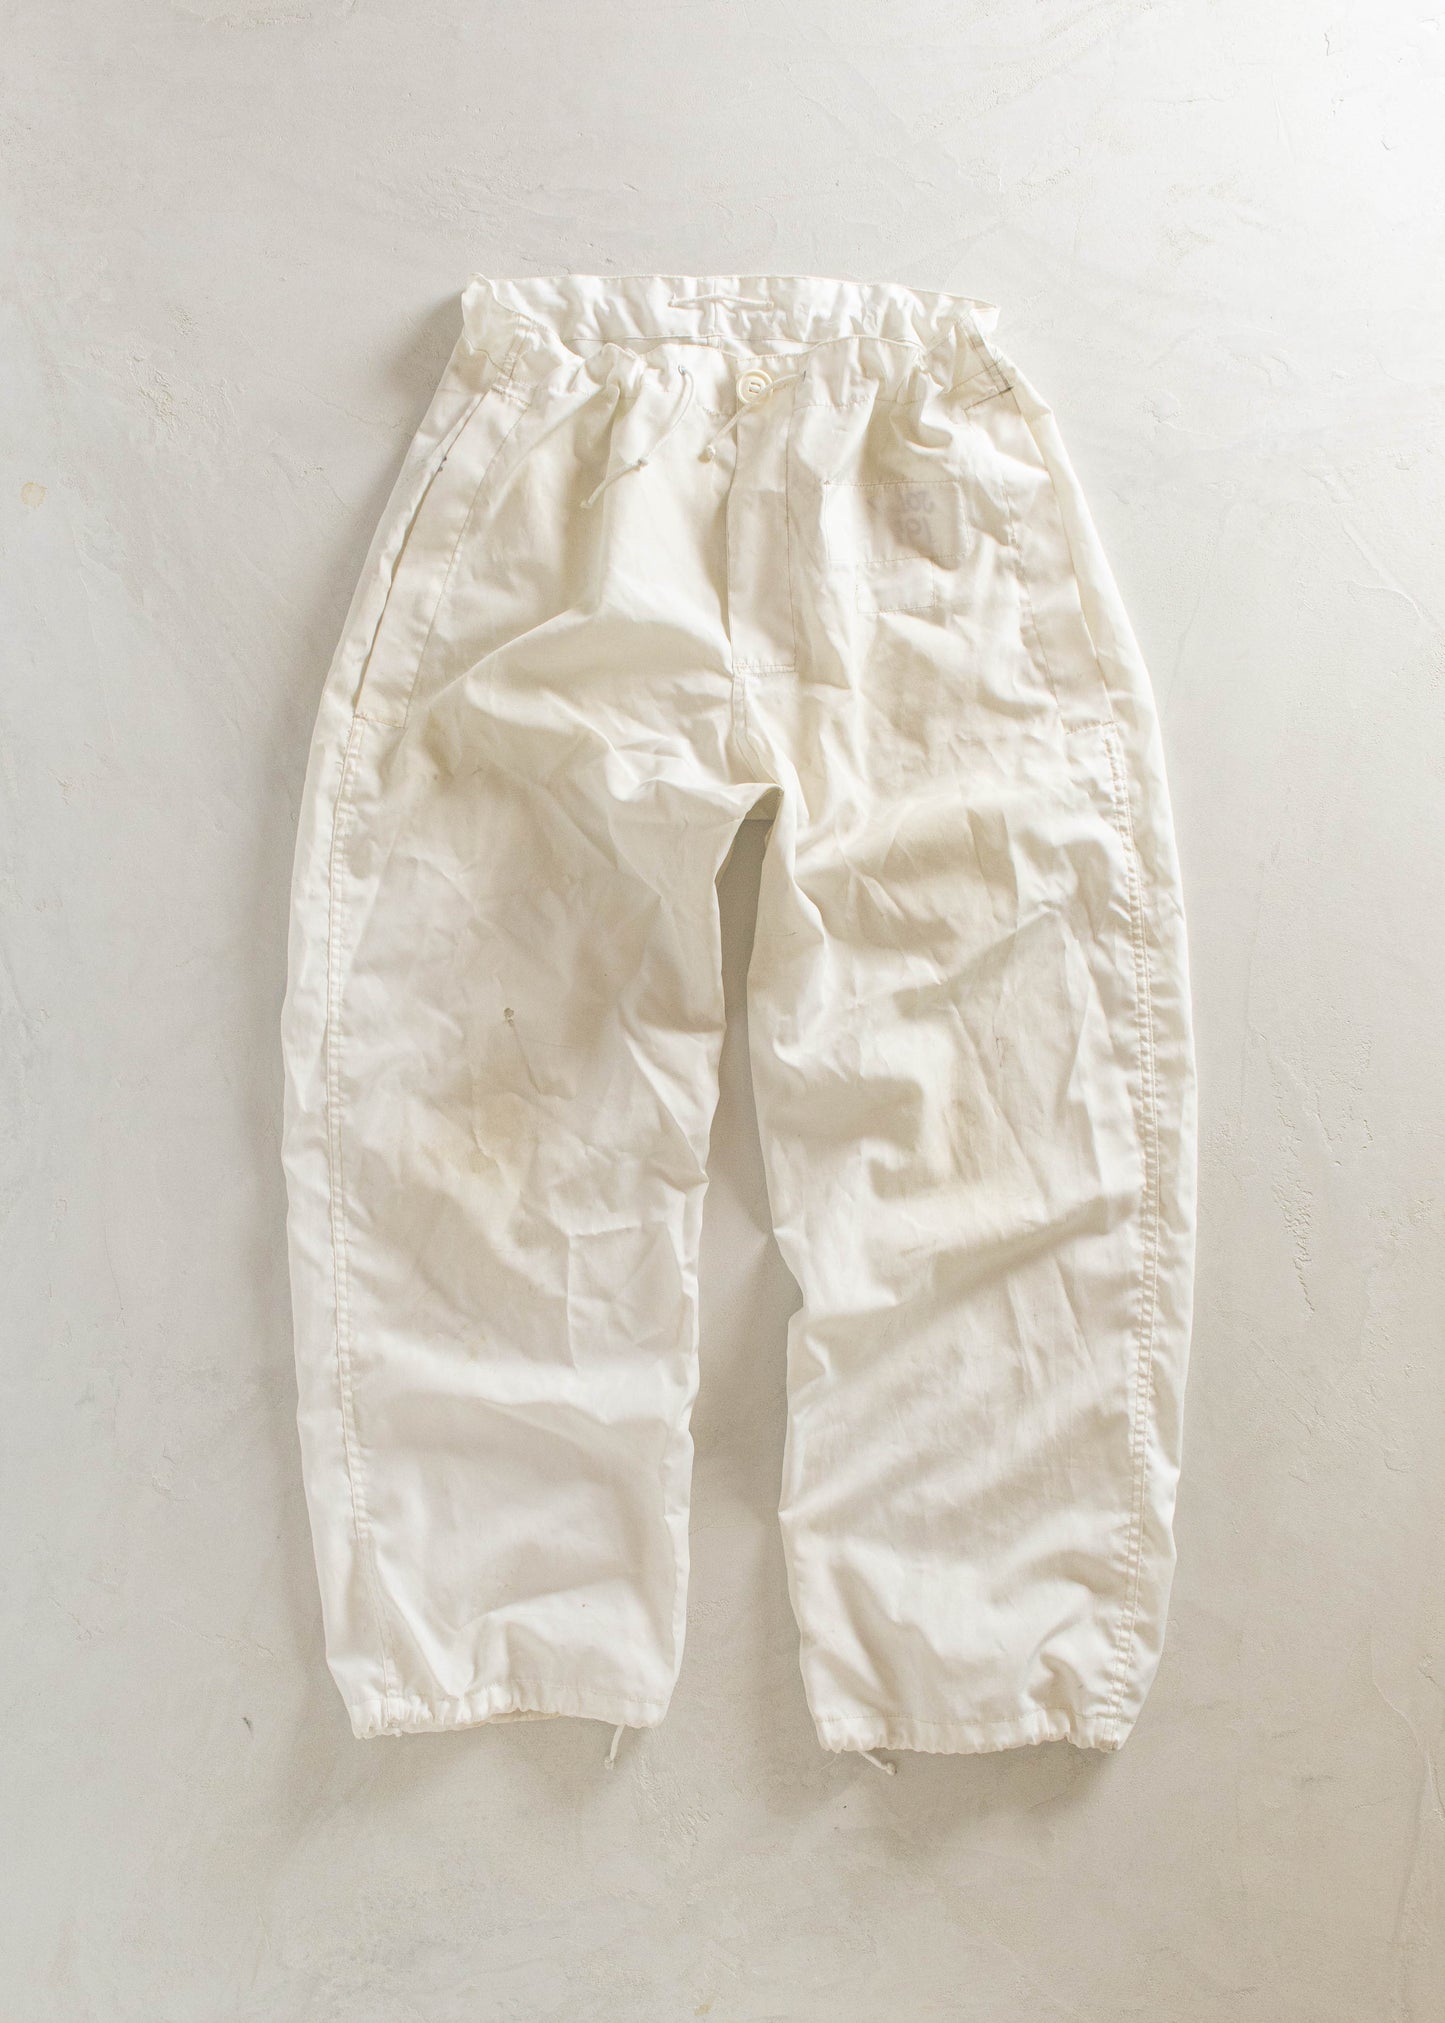 1990s Canadian Military Snow Camo Parachute Pants Size M/L